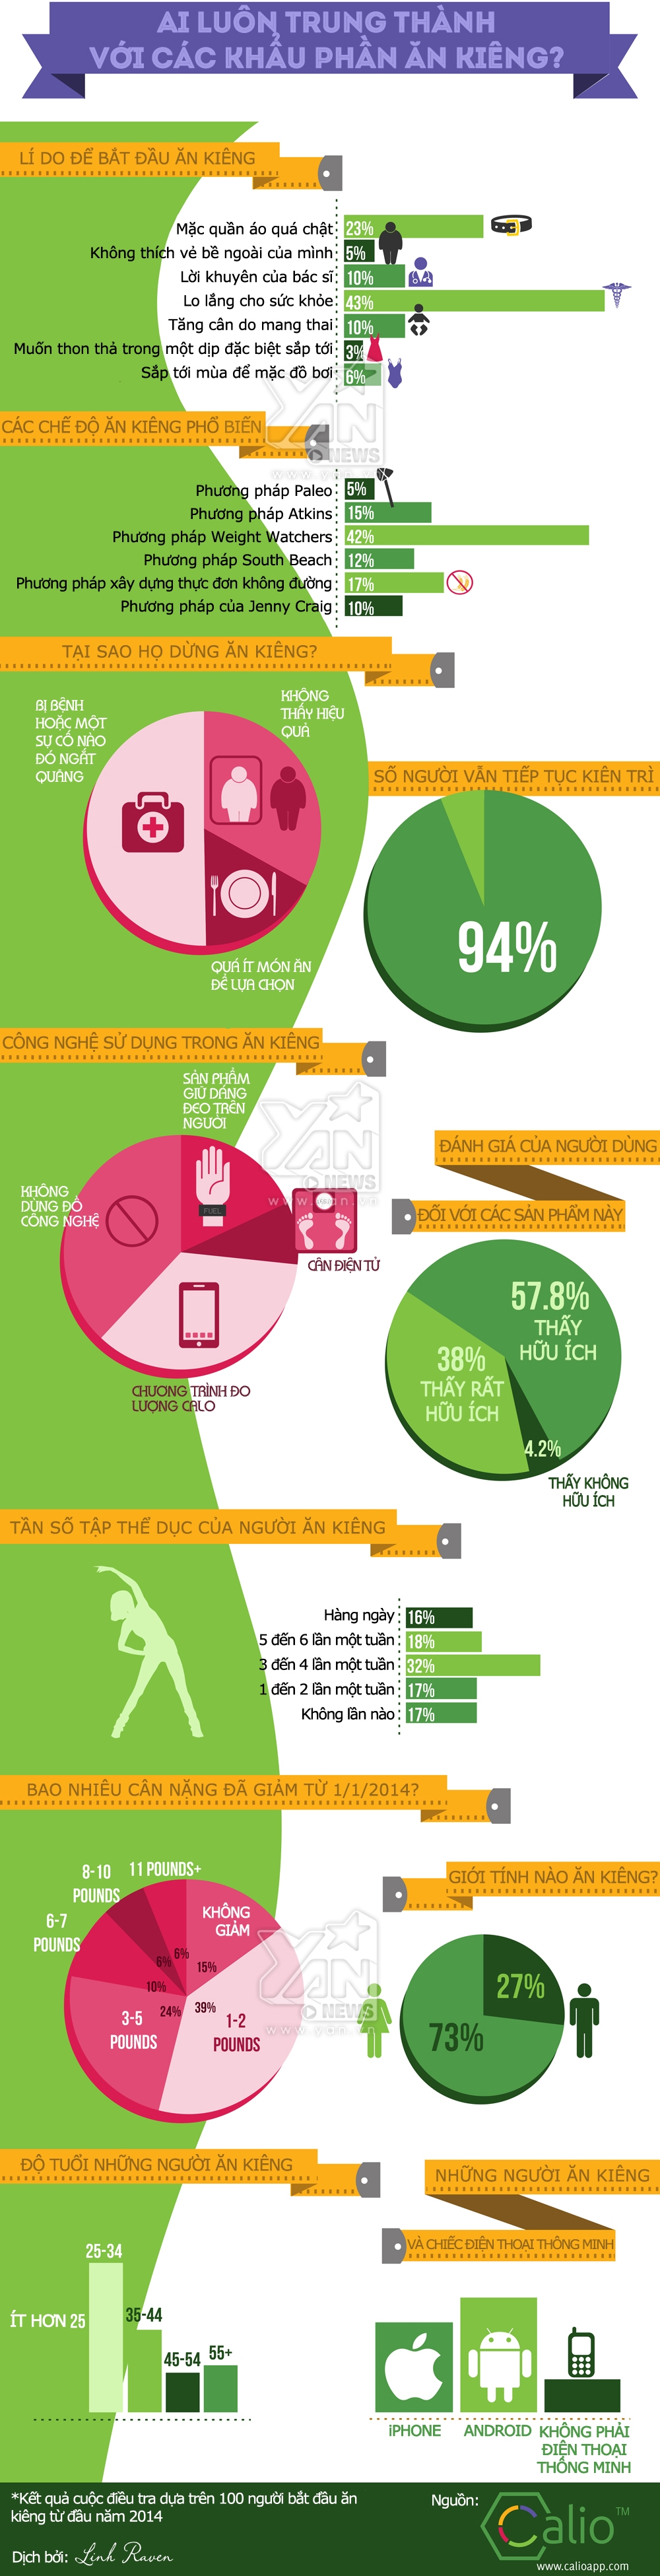 [Infographic] Ăn kiêng và những con số thú vị